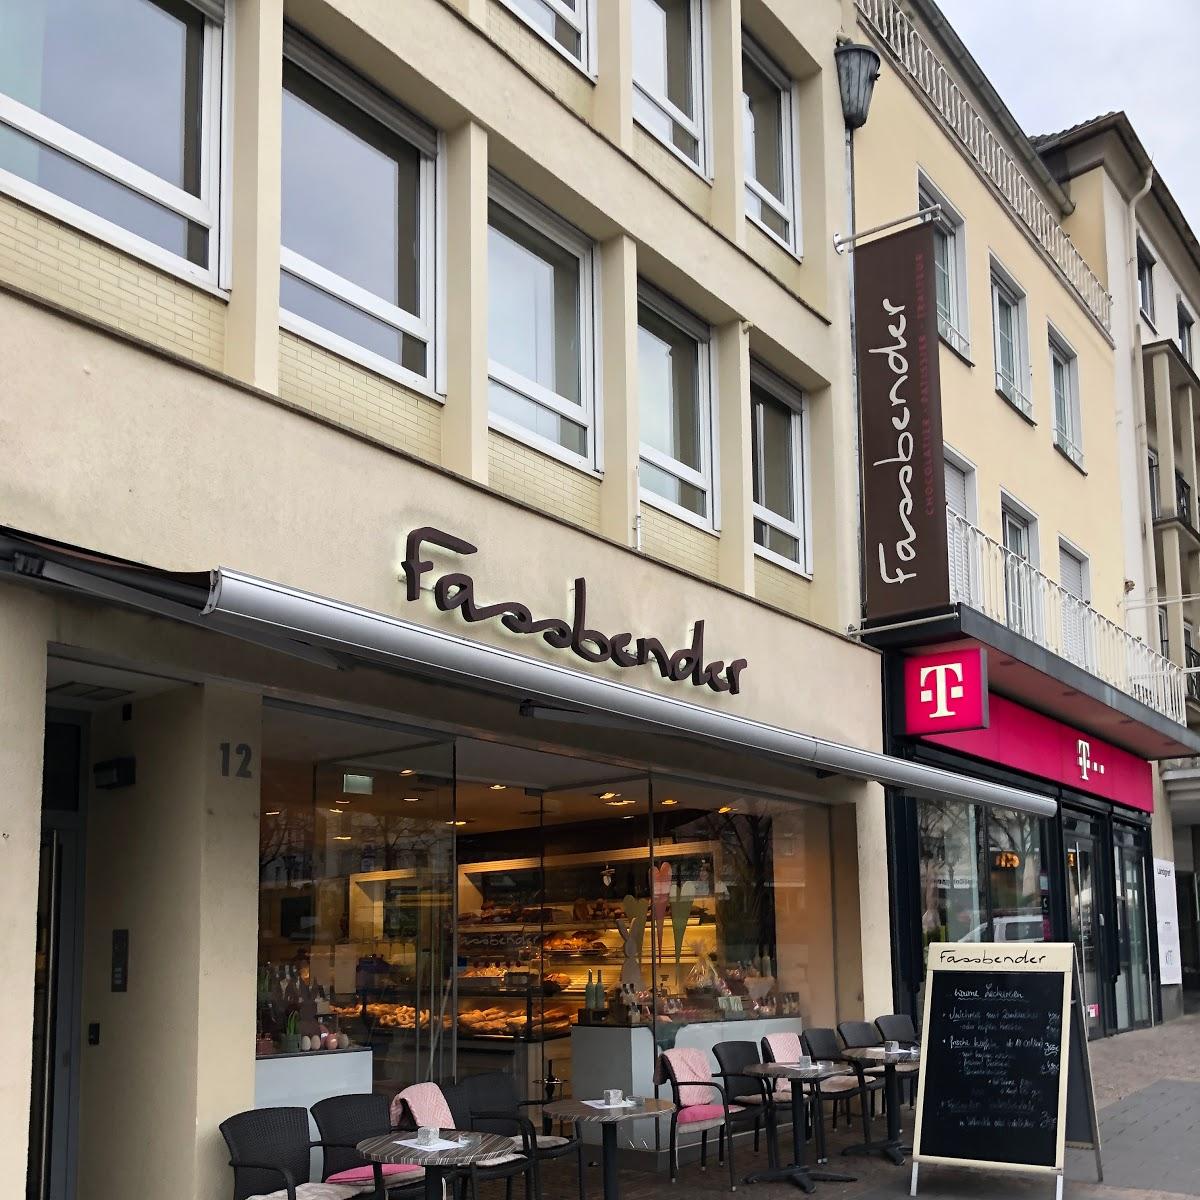 Restaurant "Fassbender" in Siegburg